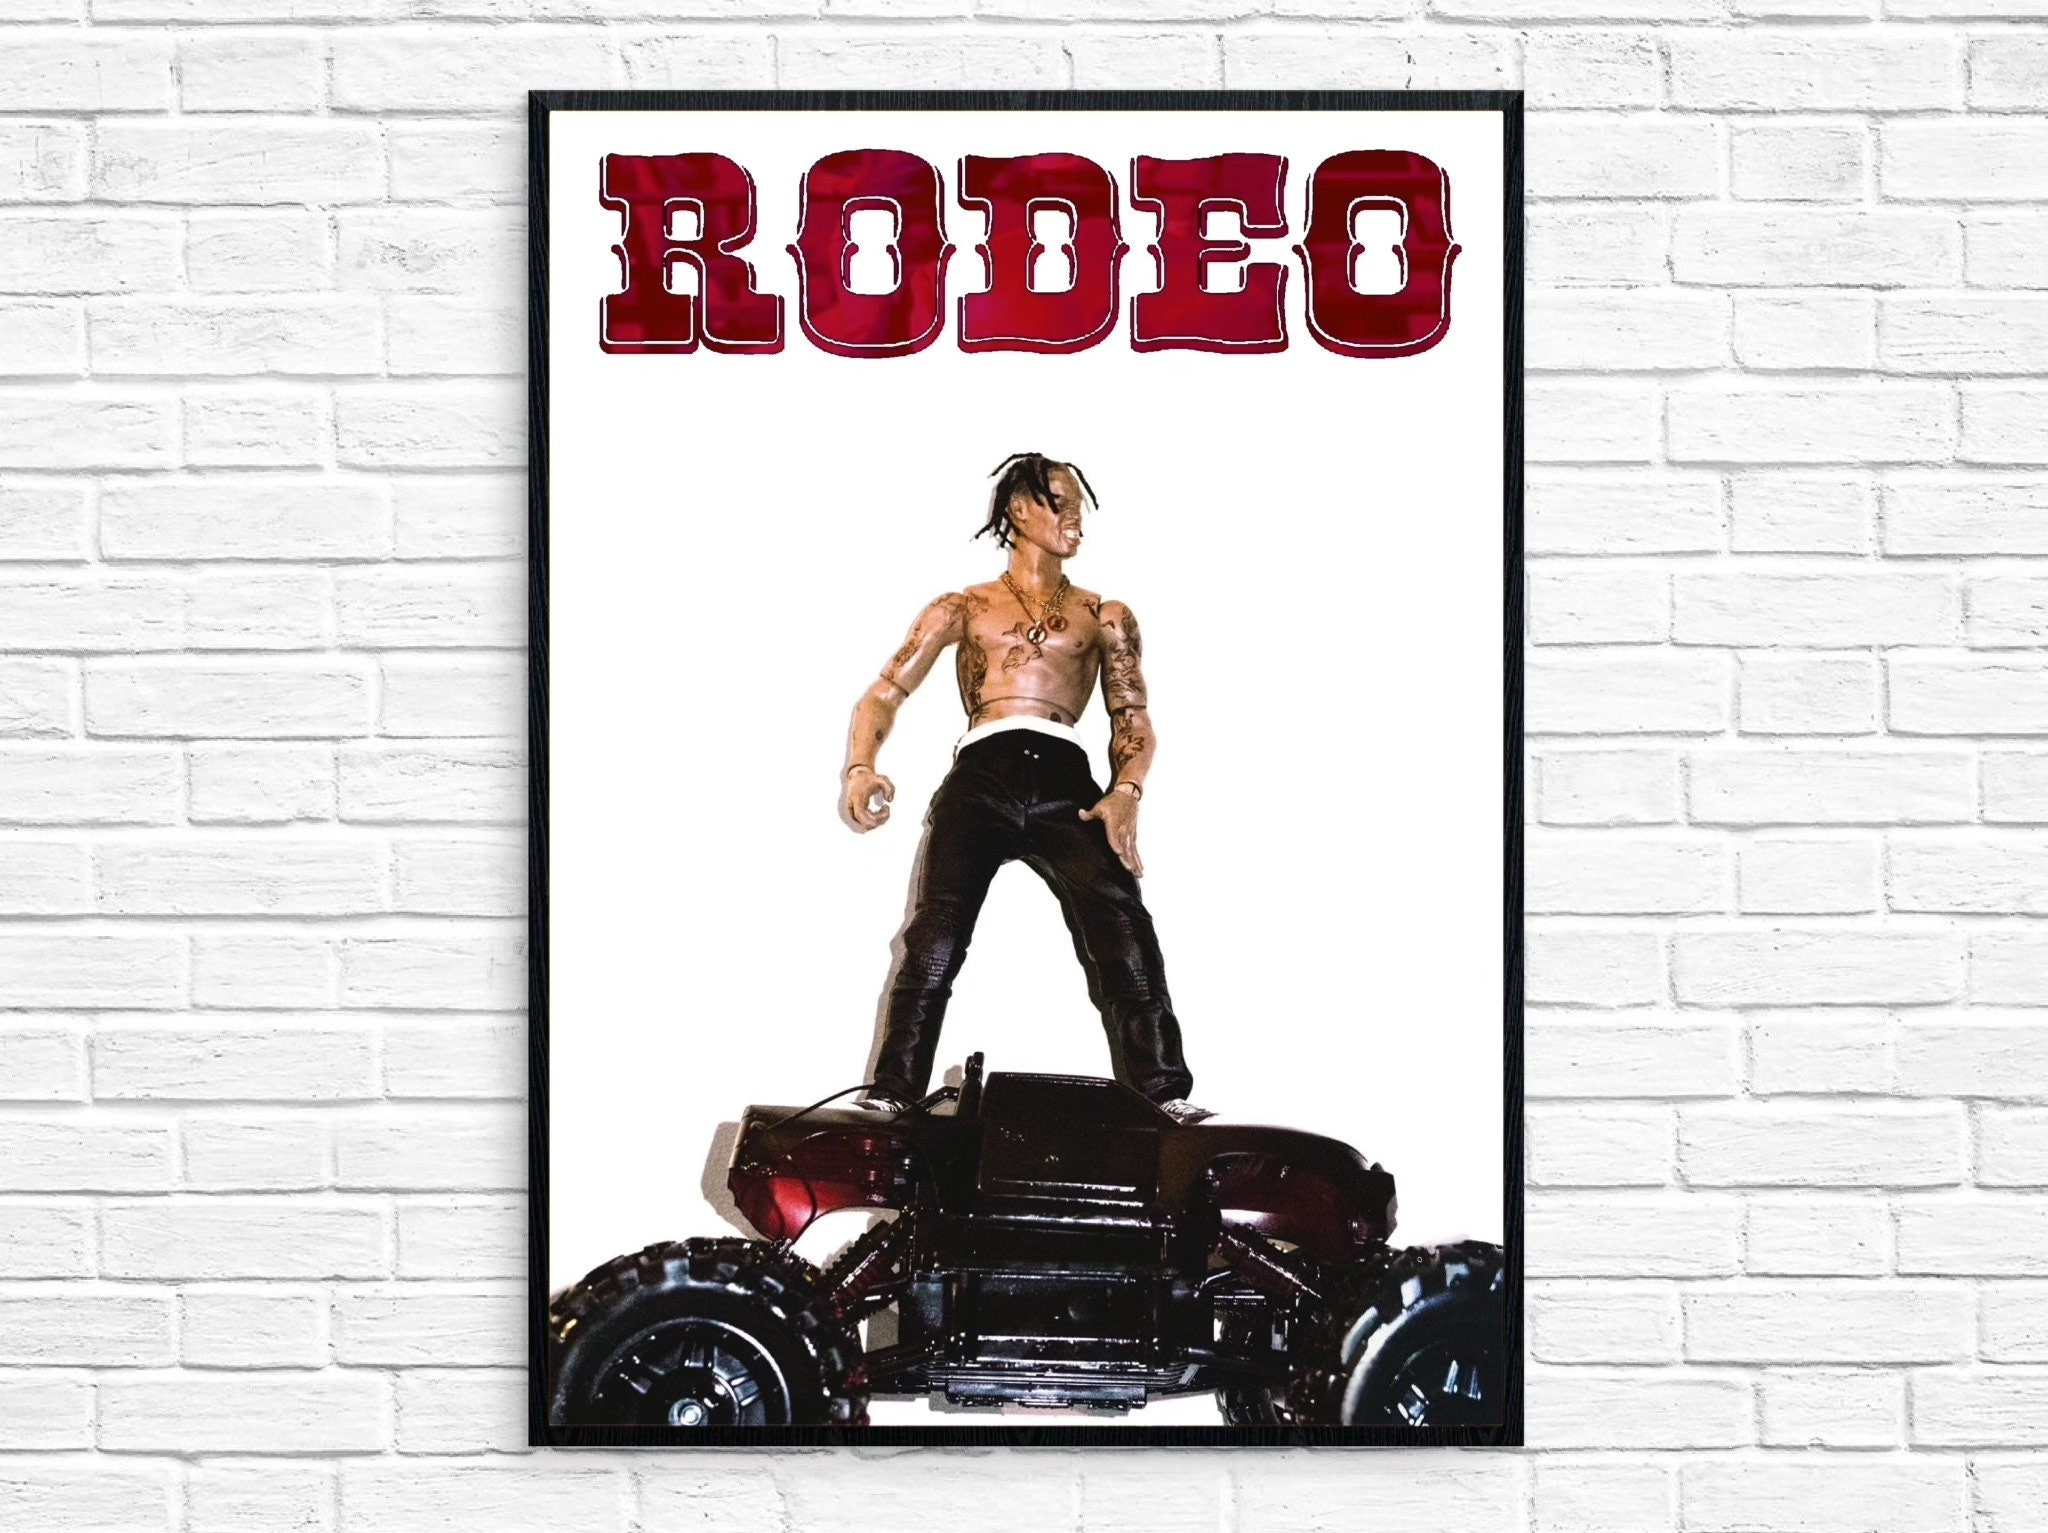 Travis Scott - Rodeo Album Poster